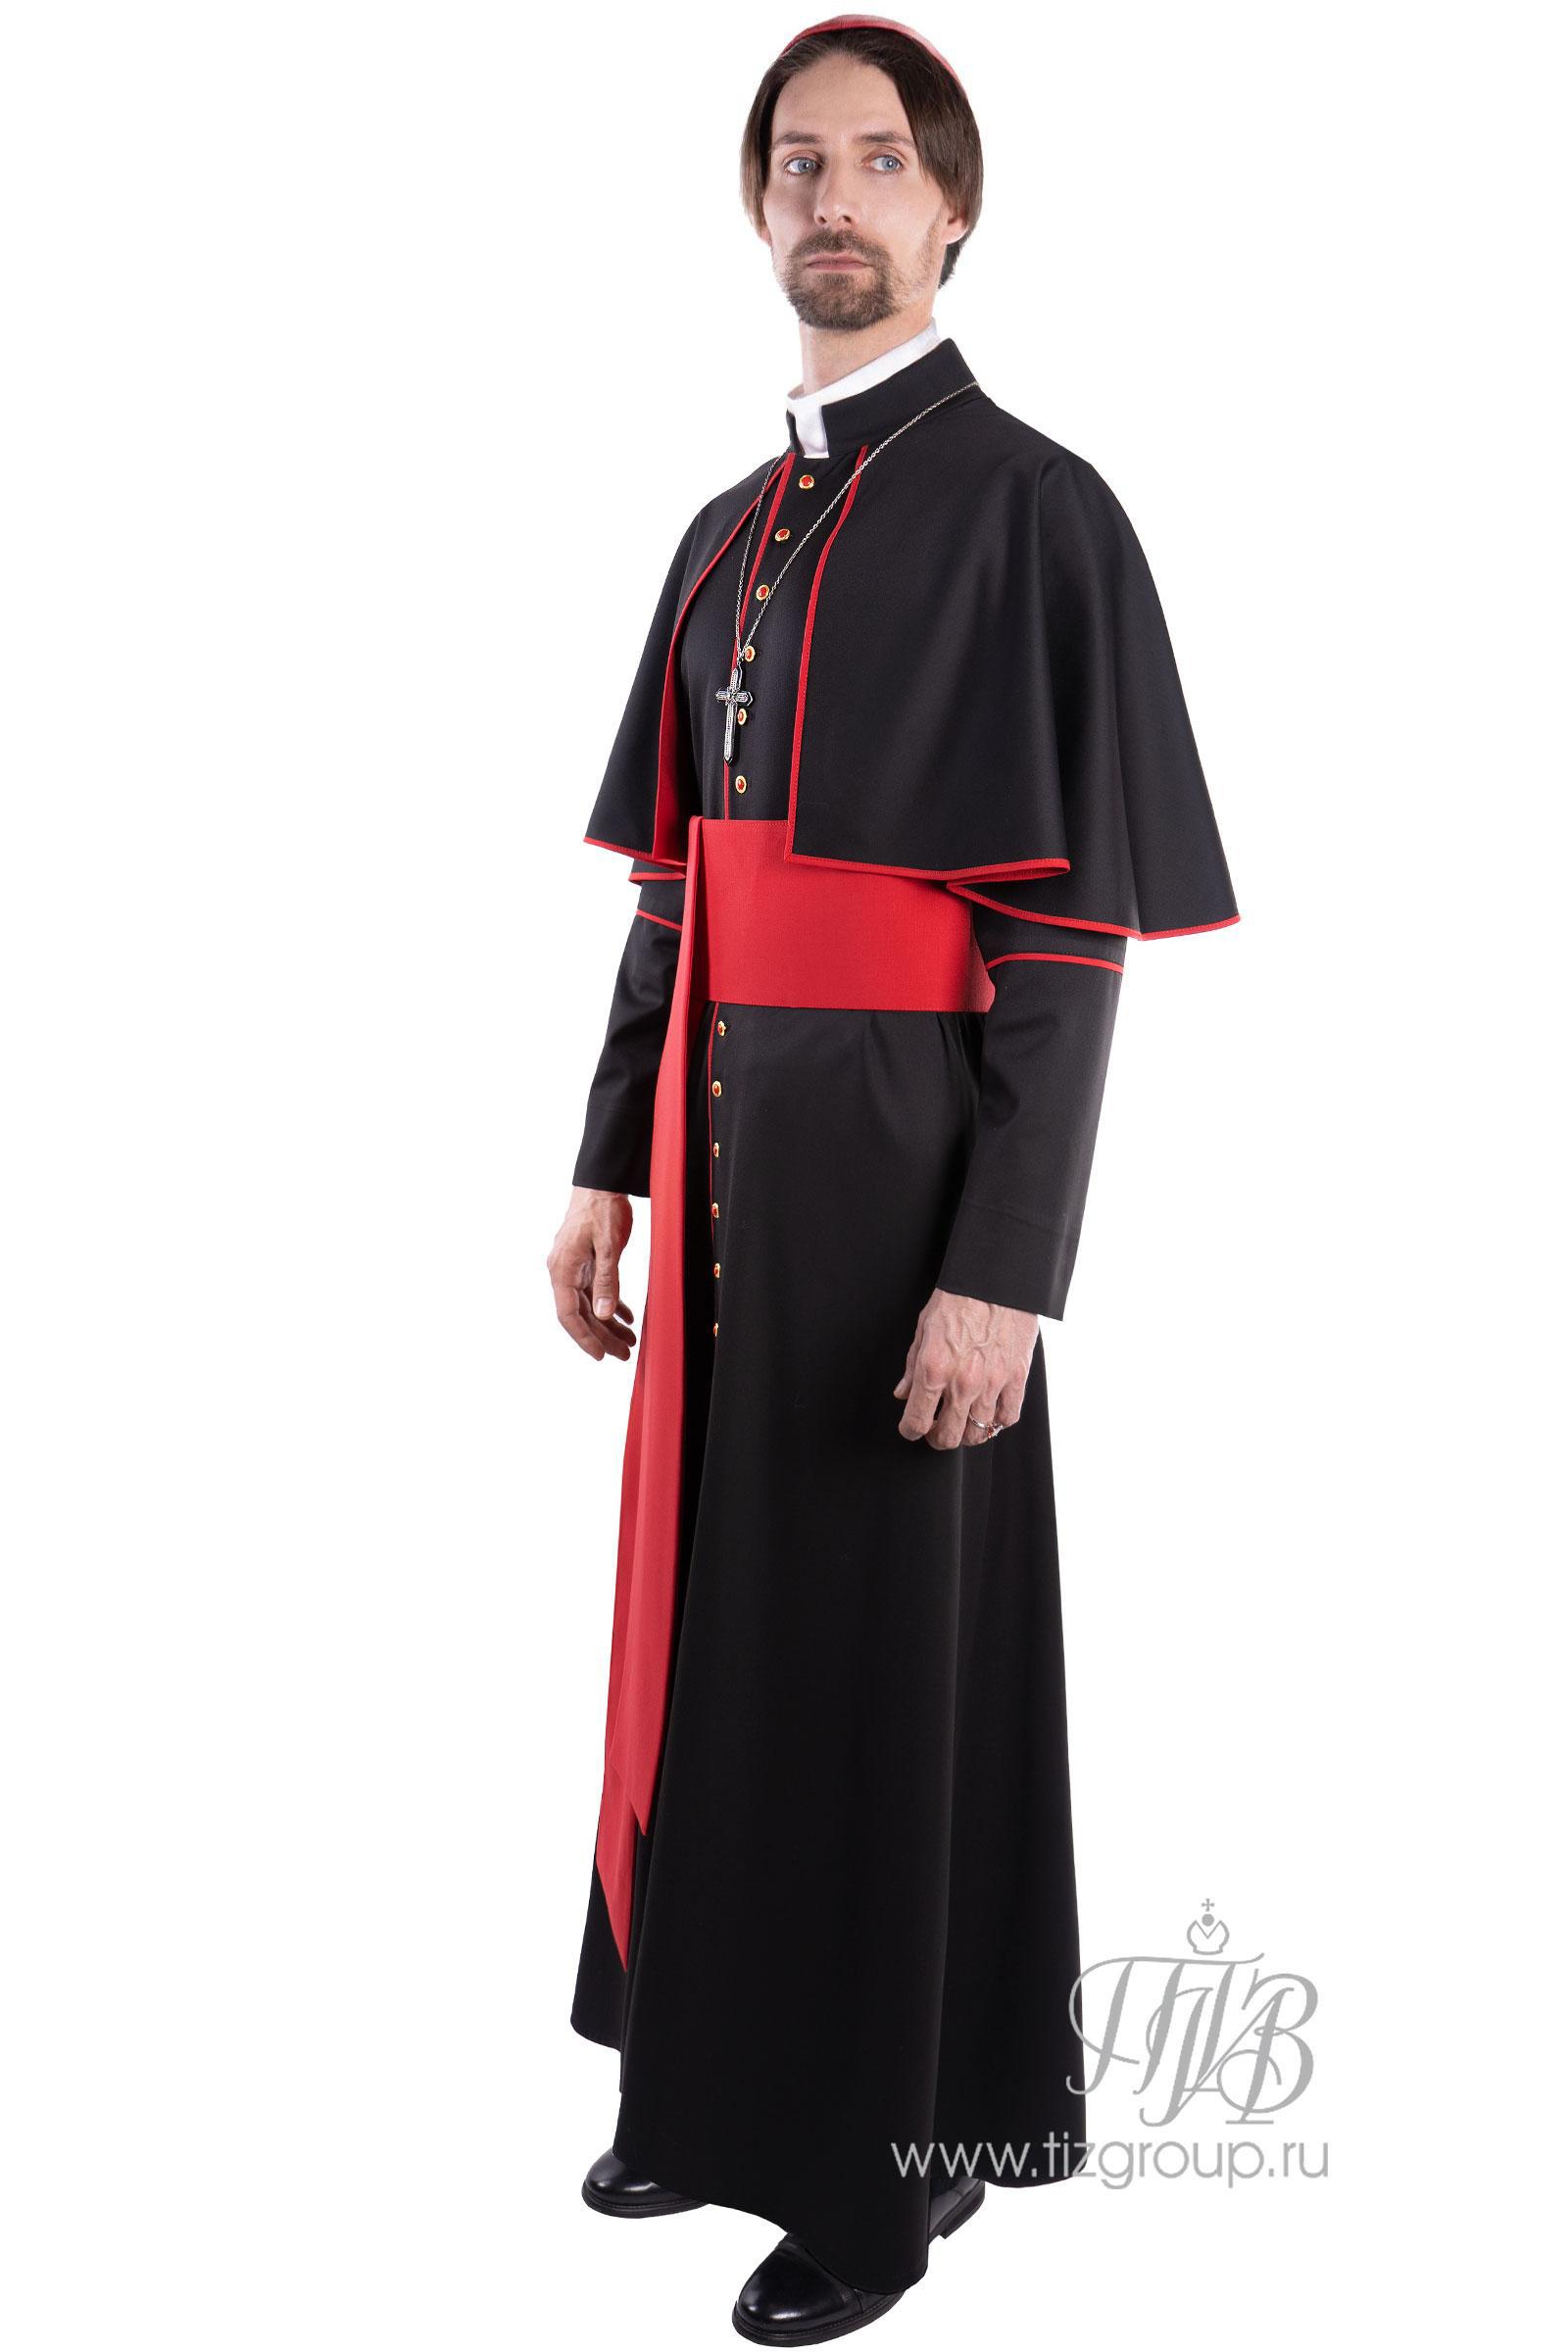 Костюм католического священника, кардинал